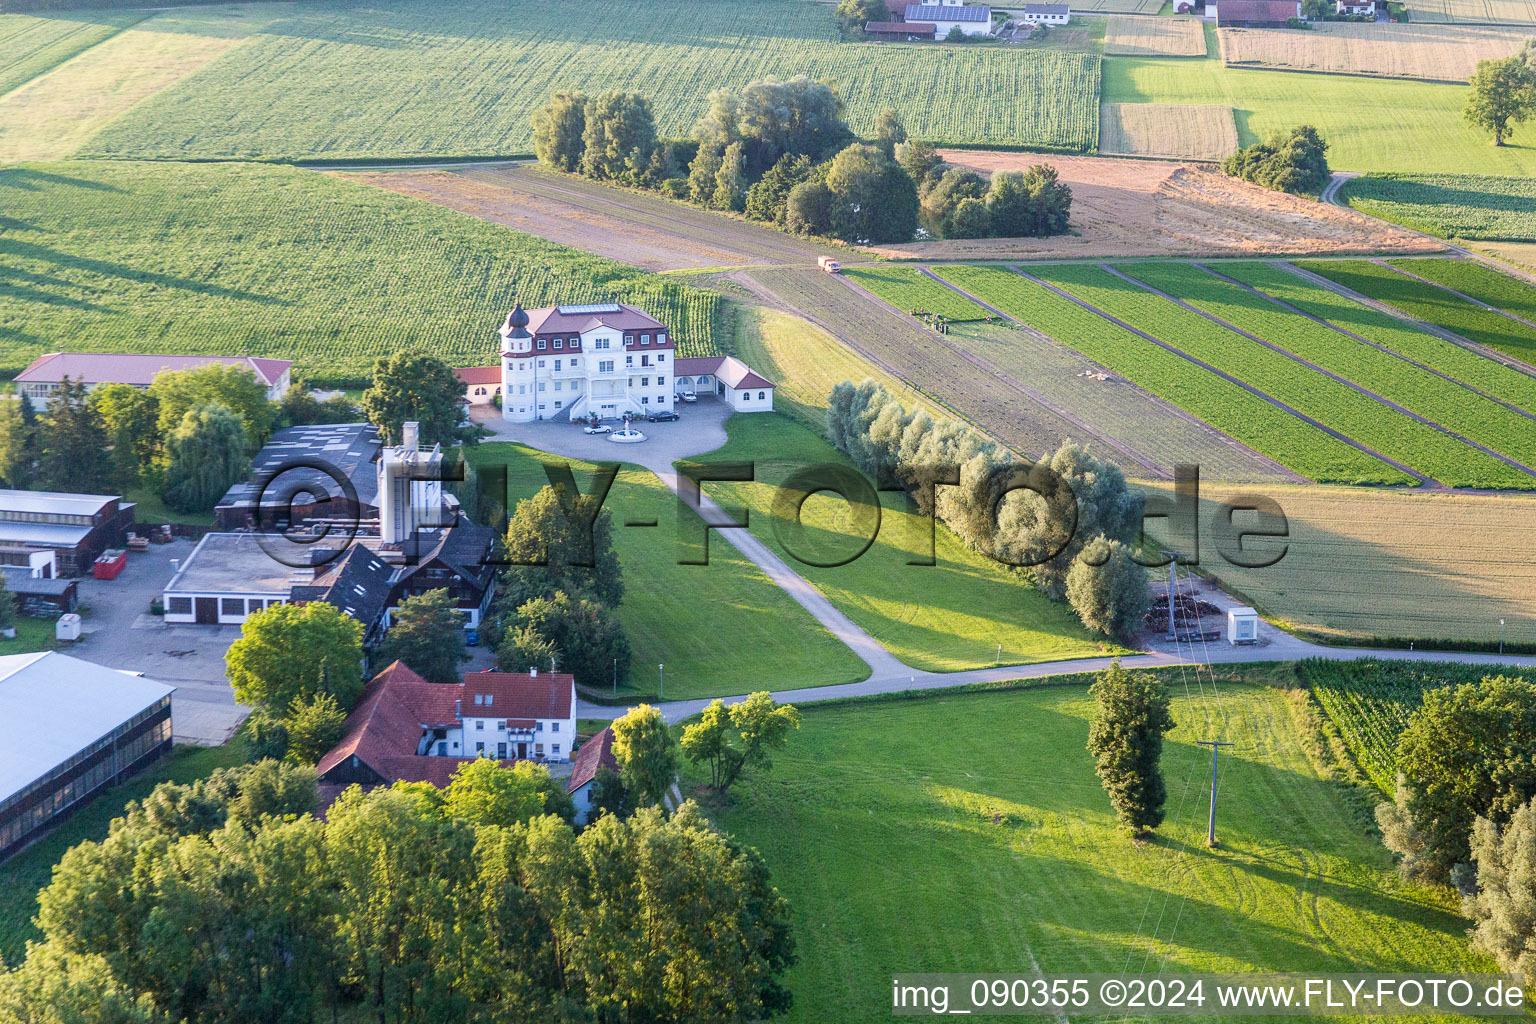 Luftbild von Gebäude und Parkanlagen am Herrenhaus des Gutshauses - Landgut Plankenschwaige in Landau an der Isar im Bundesland Bayern, Deutschland